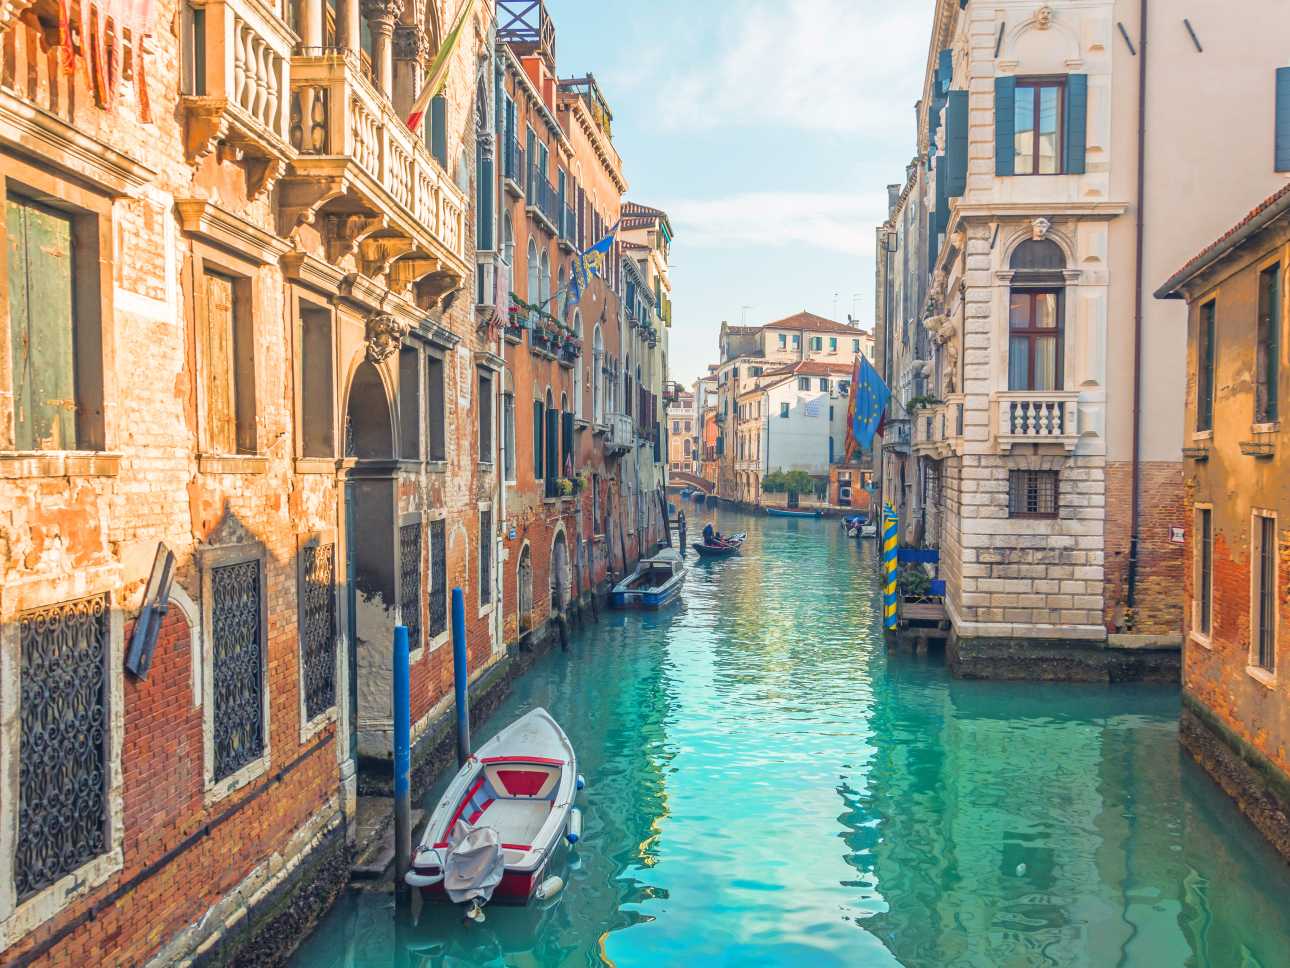 Découvrez de magnifiques canaux et l'architecture étonnante, de la ville pendant votre voyage à Venise ?